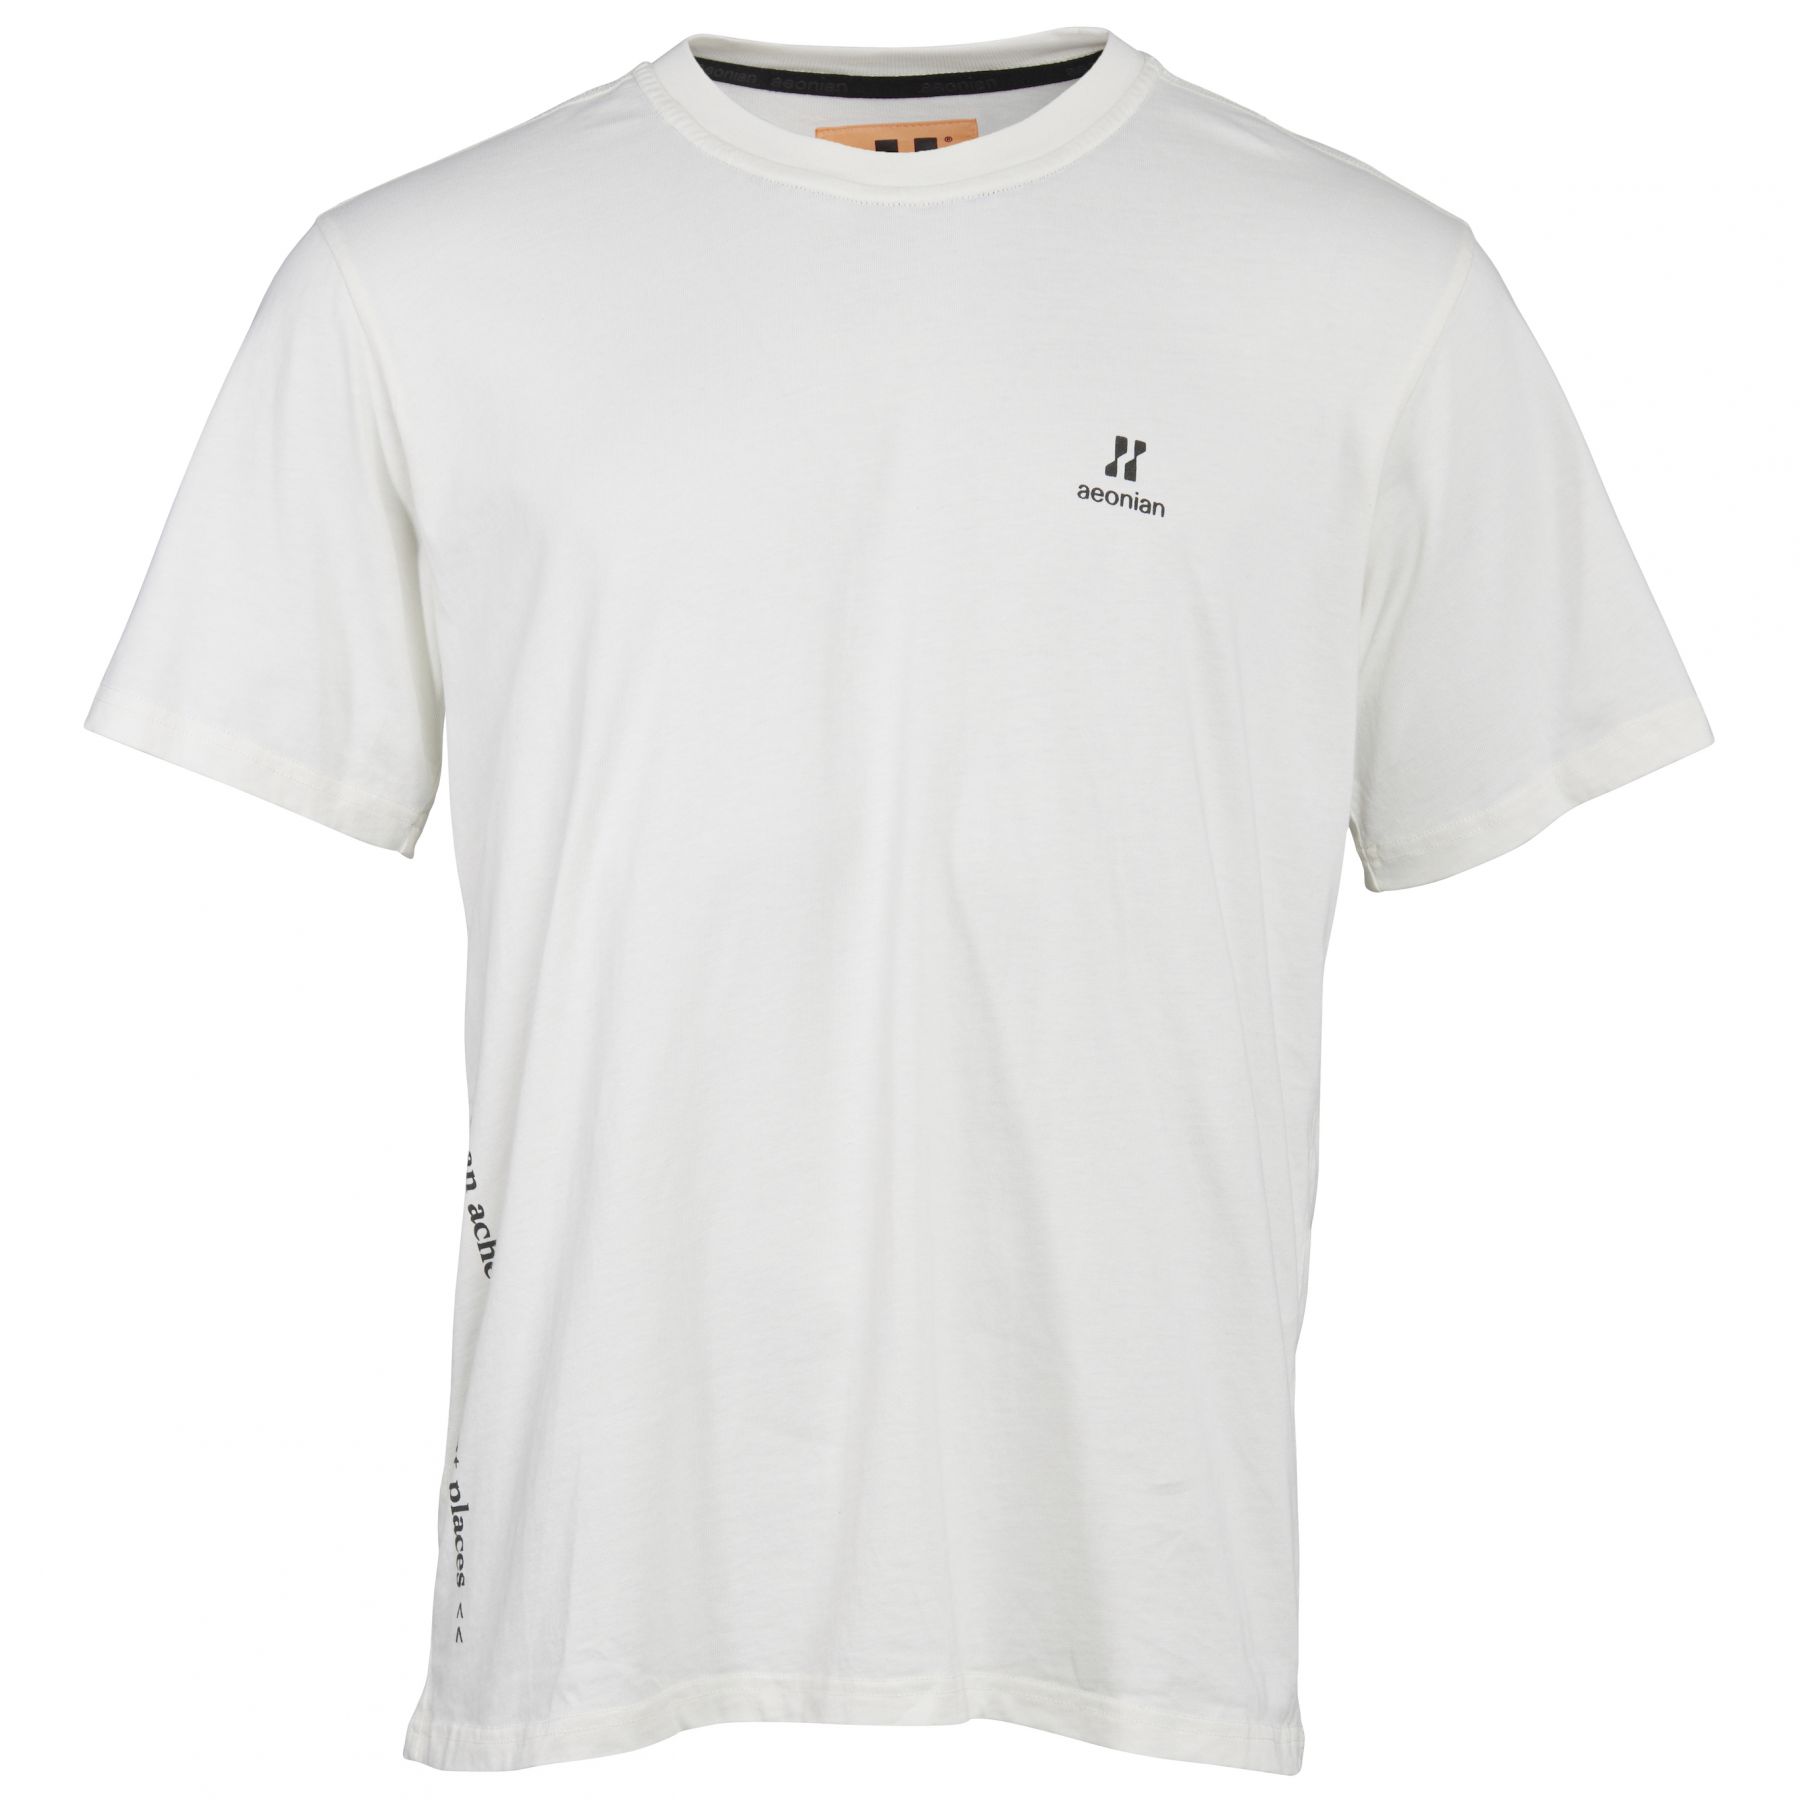 Aeonian the LYNGEN t-shirt valkoinen